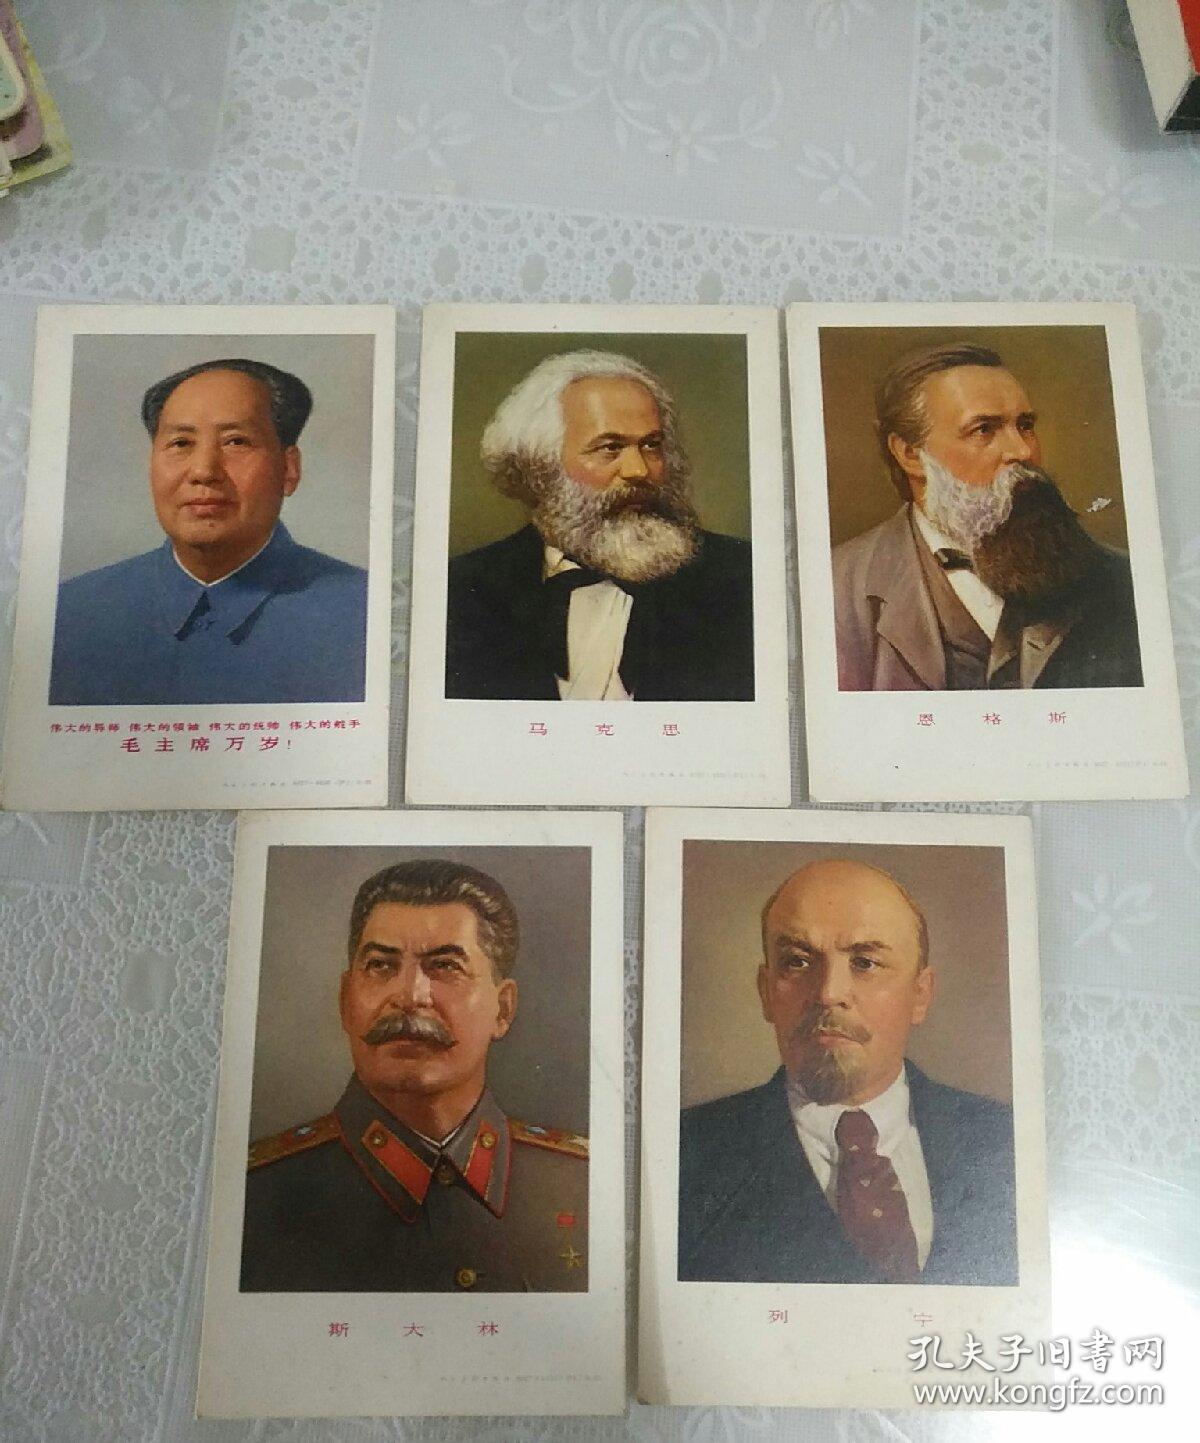 毛泽东，马克思，恩克斯。斯大林，列宁。肖像卡片。